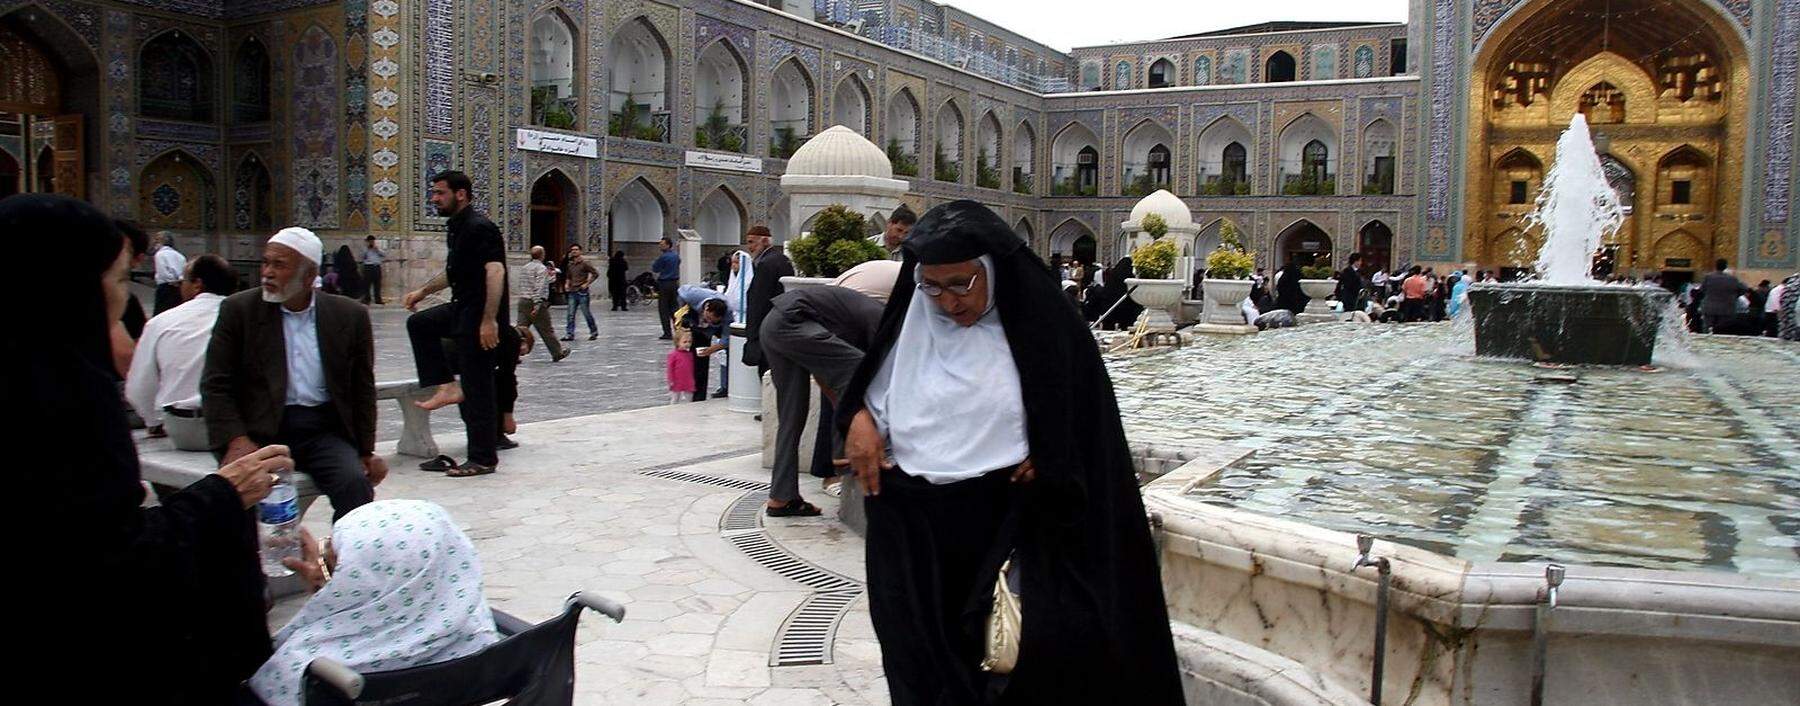 Der heilige Schrein in Mashad, Iran, wurde erst am Montag geschlossen